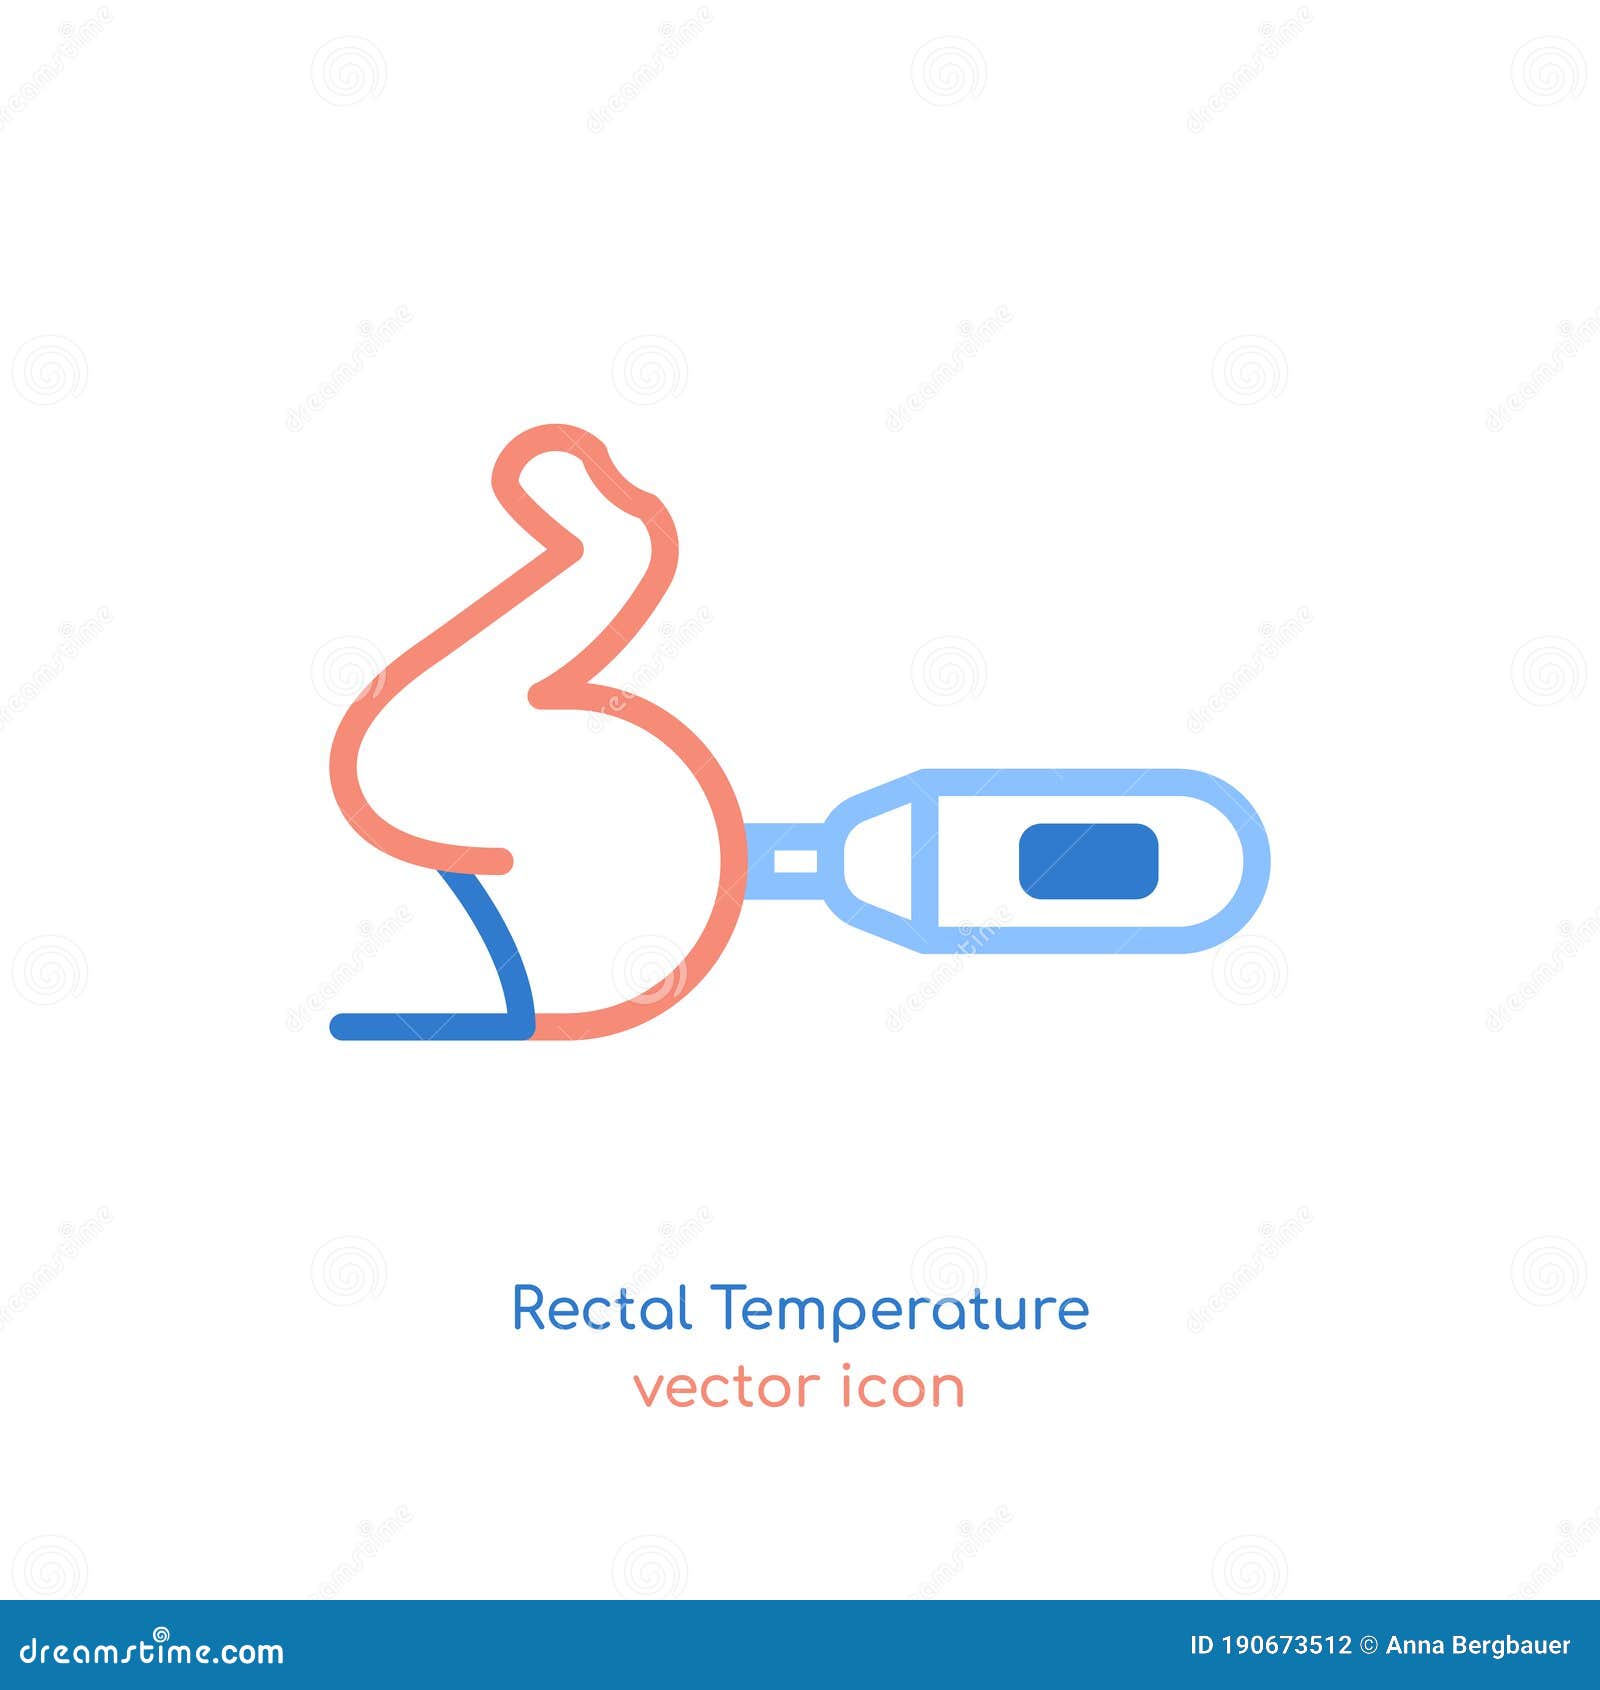 Rectal Temperature Drawings